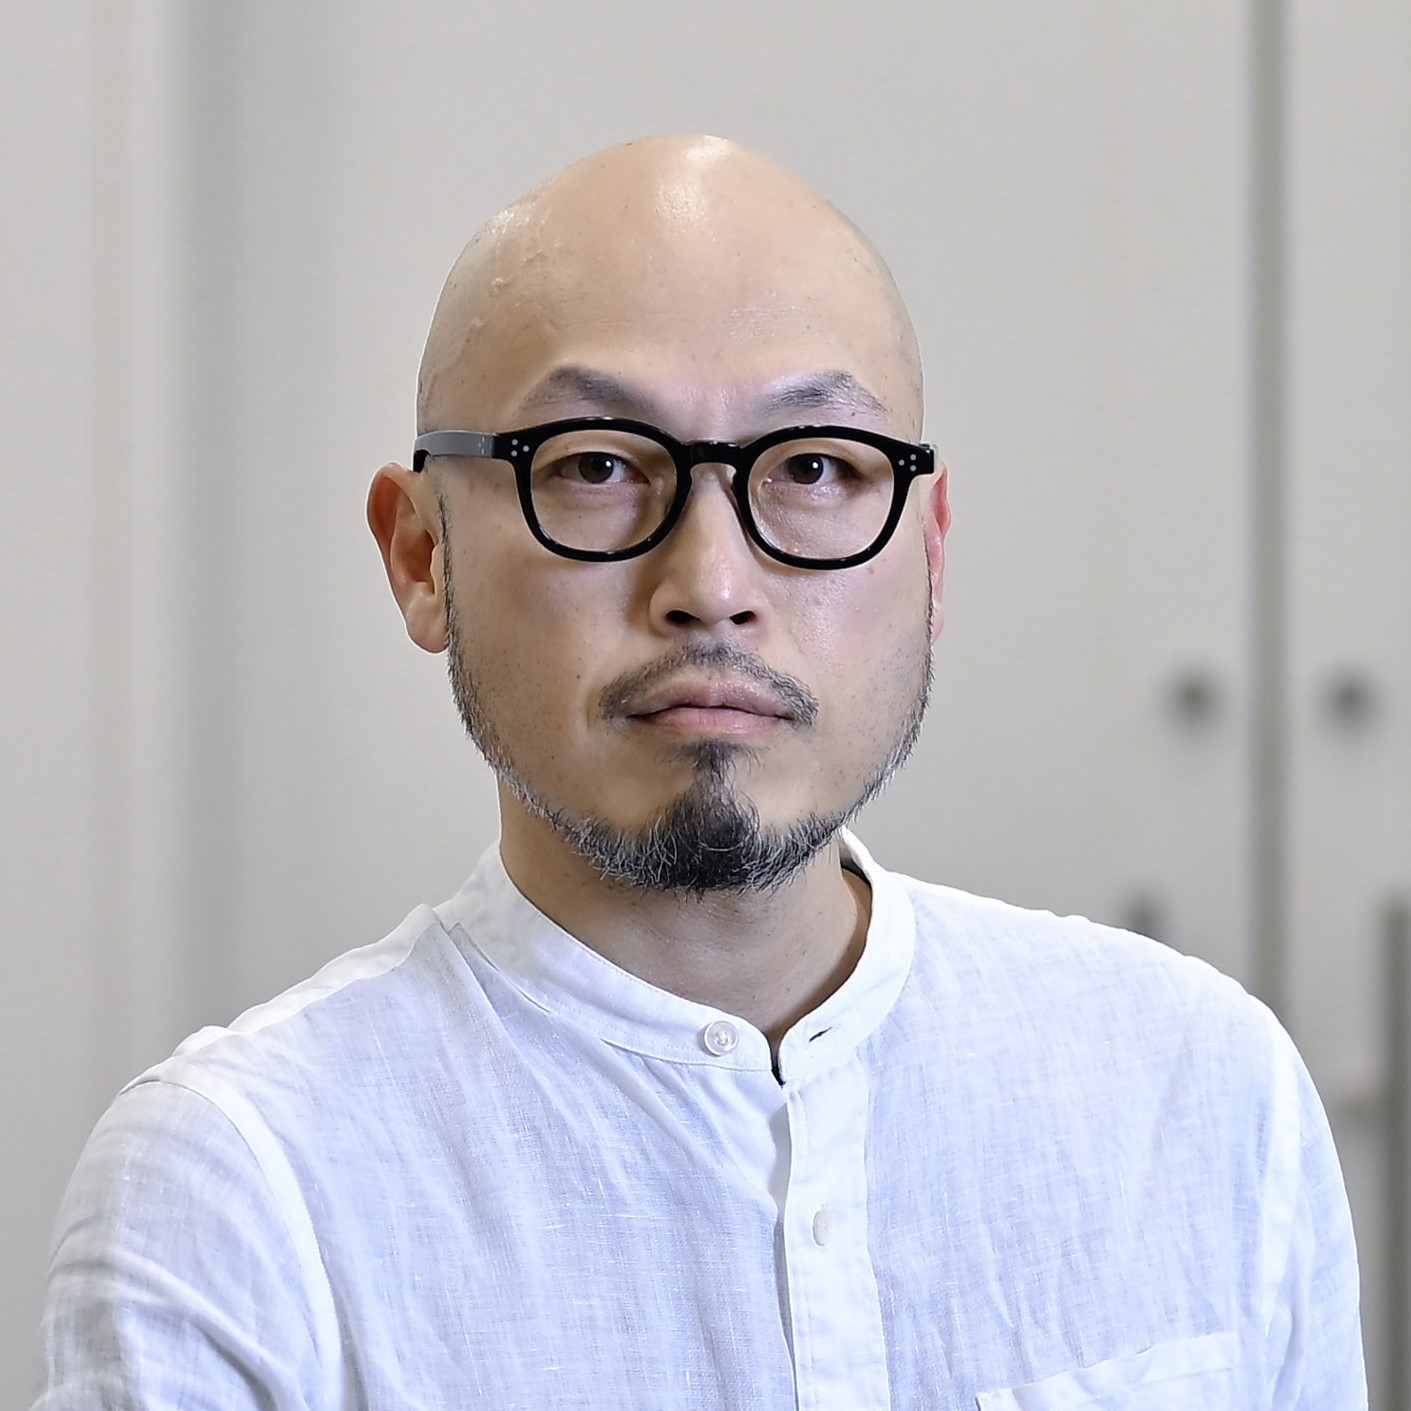 Tomohiro Maekawa